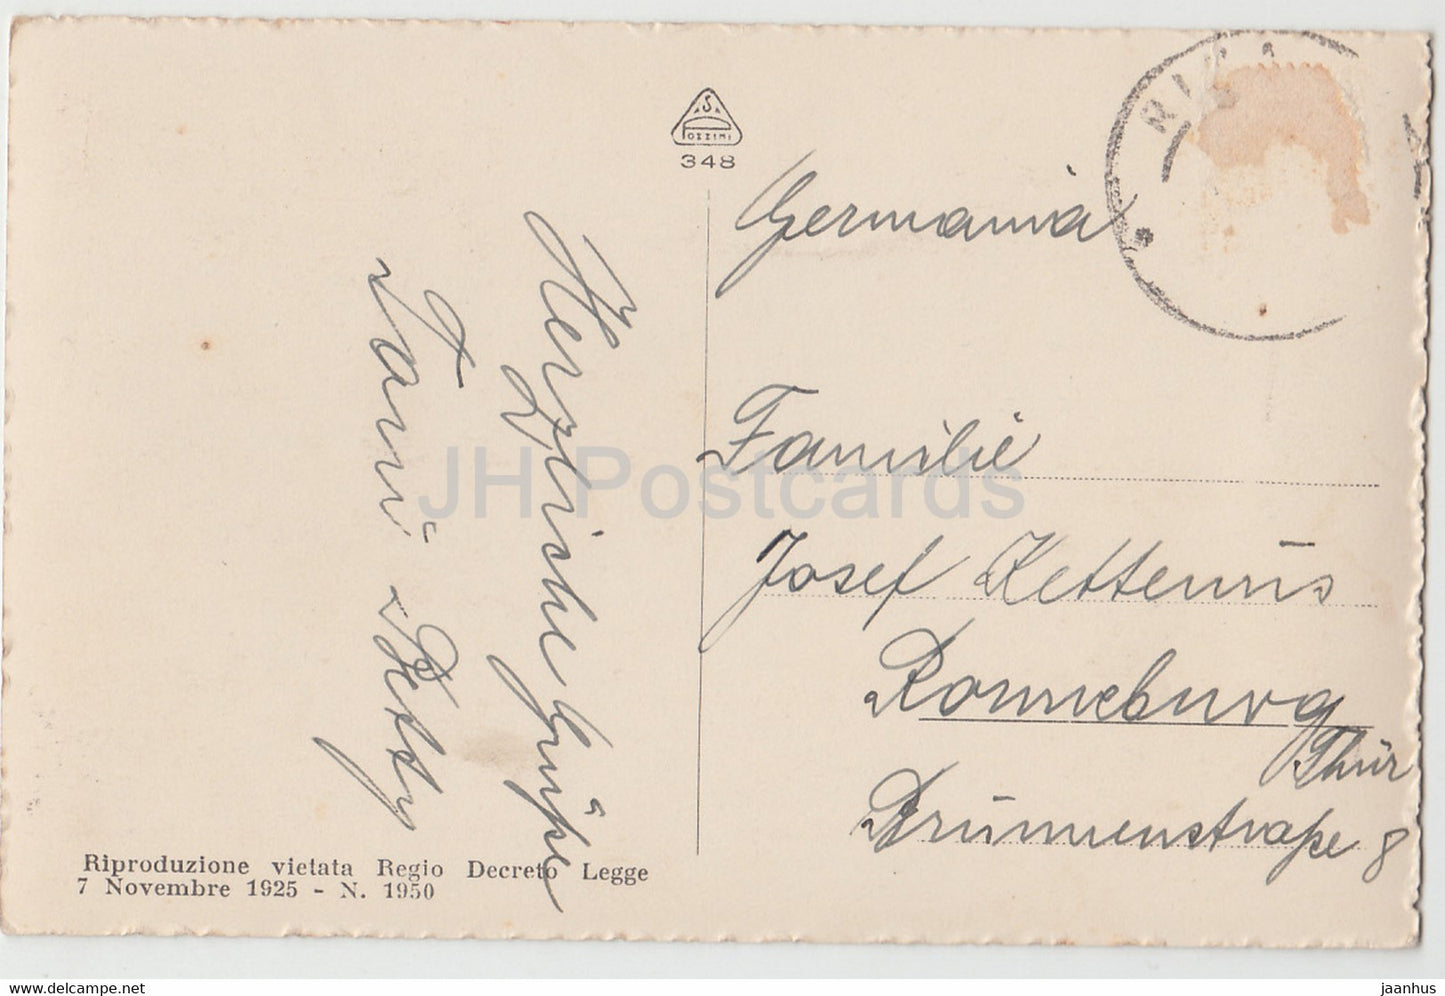 Riva - Lago di Garda - carte postale ancienne - 1925 - Italie - utilisé